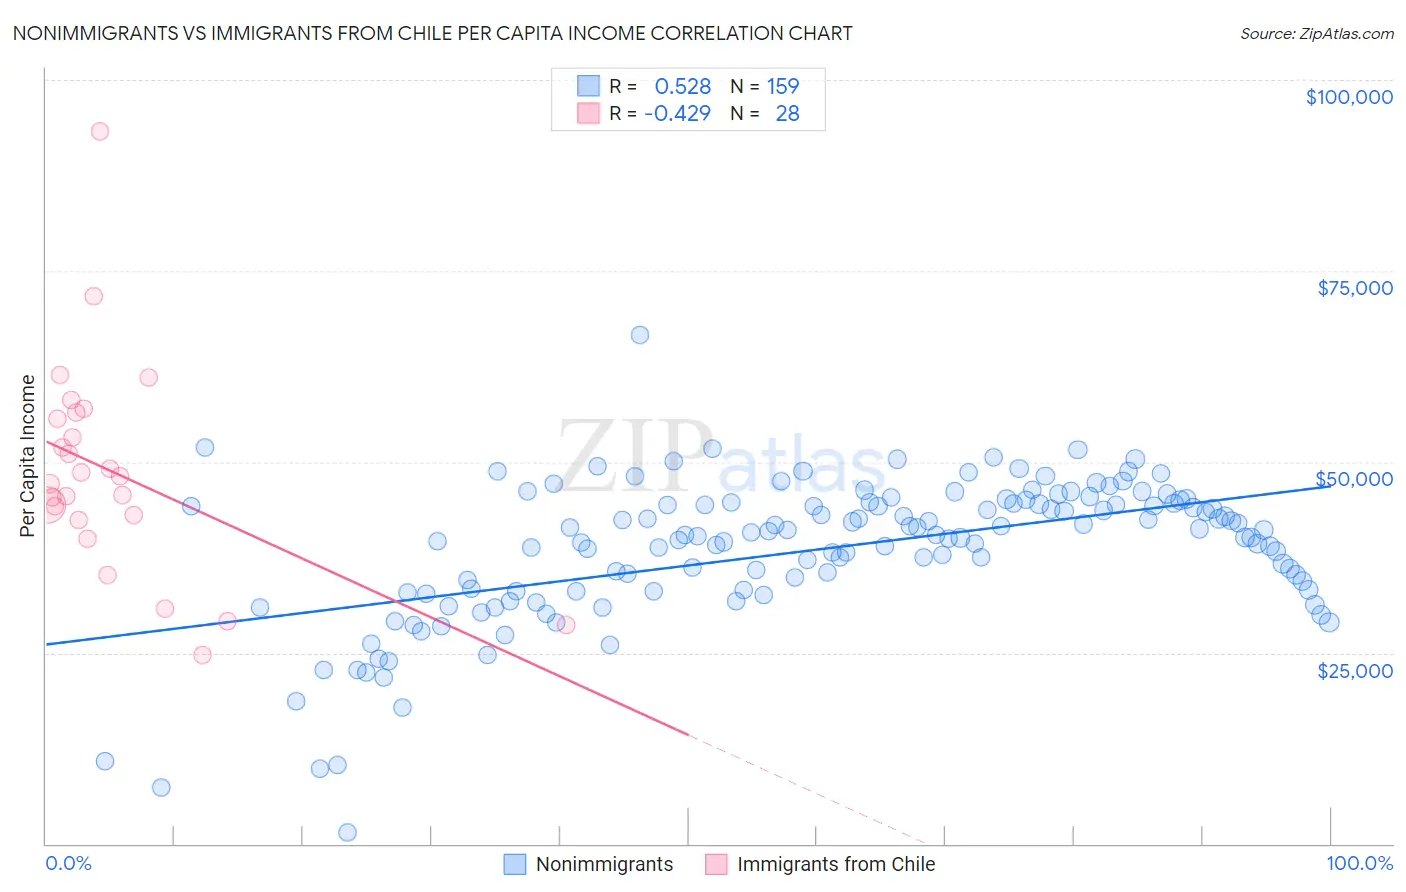 Nonimmigrants vs Immigrants from Chile Per Capita Income